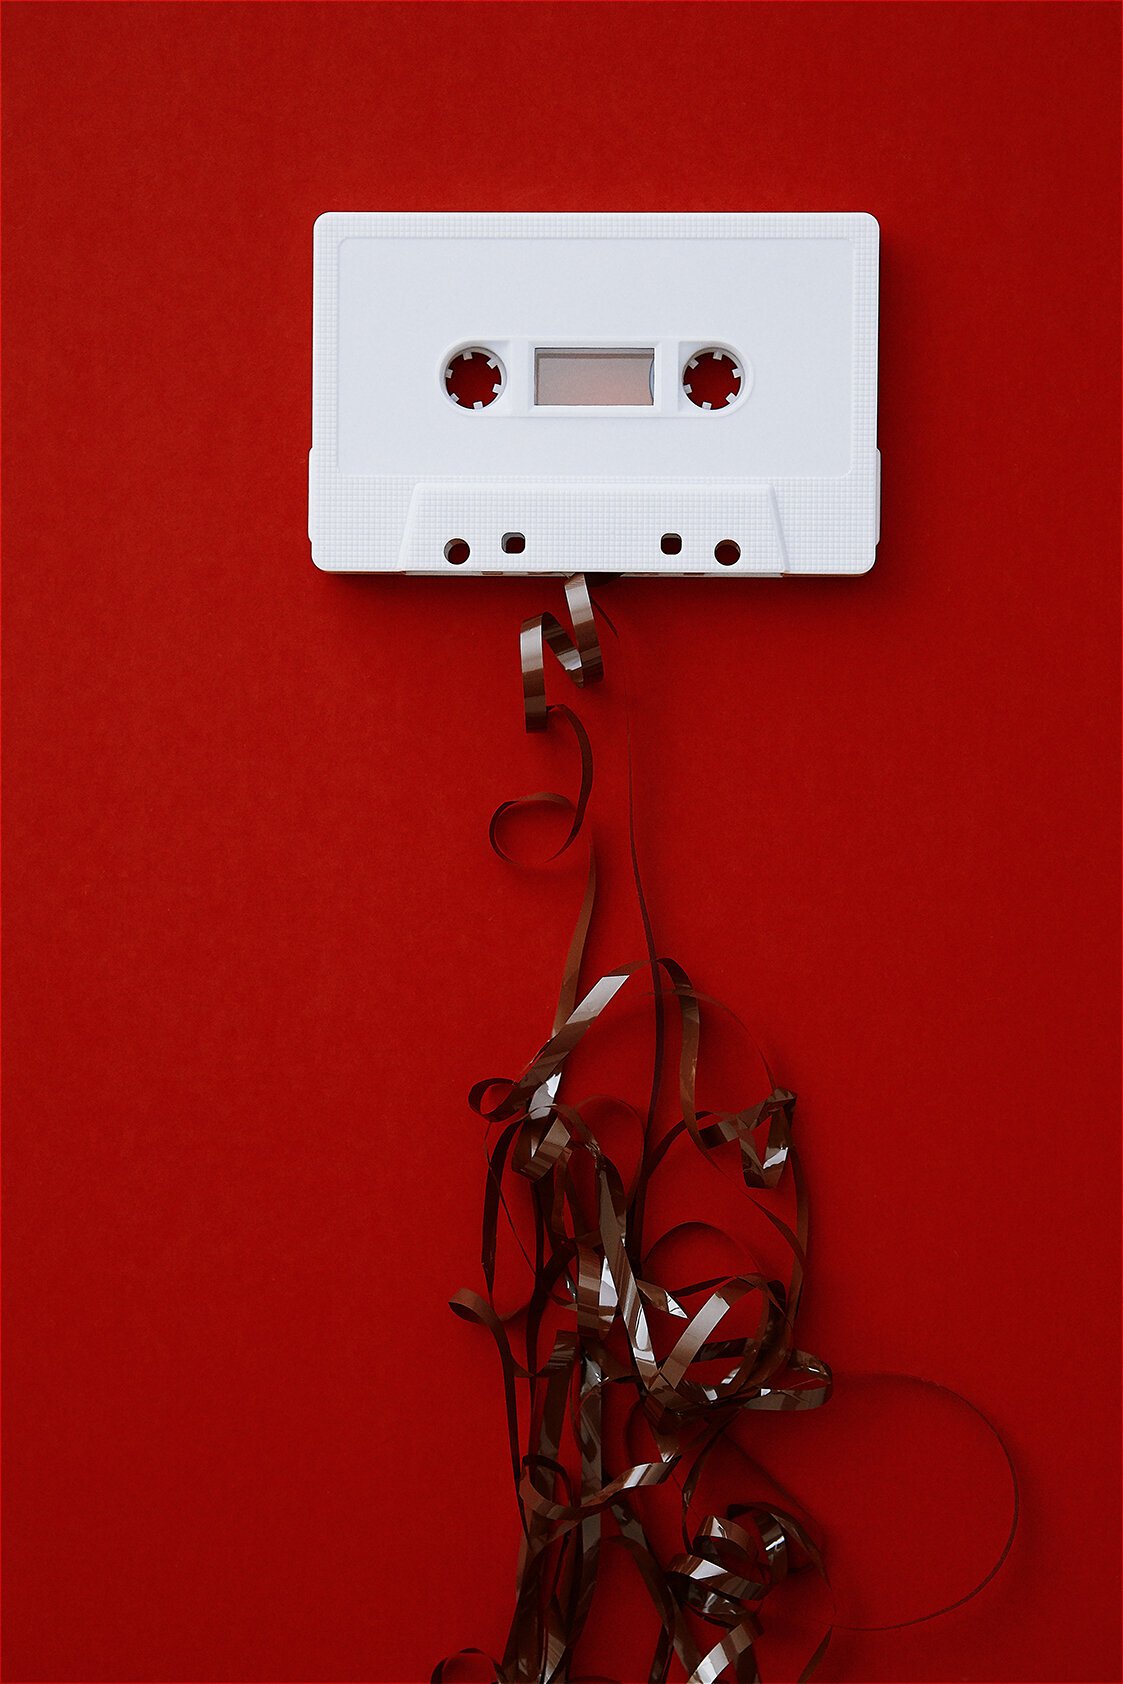 red-cassette-tape-creative-nowhere-land-matt-wilson-artist.jpg